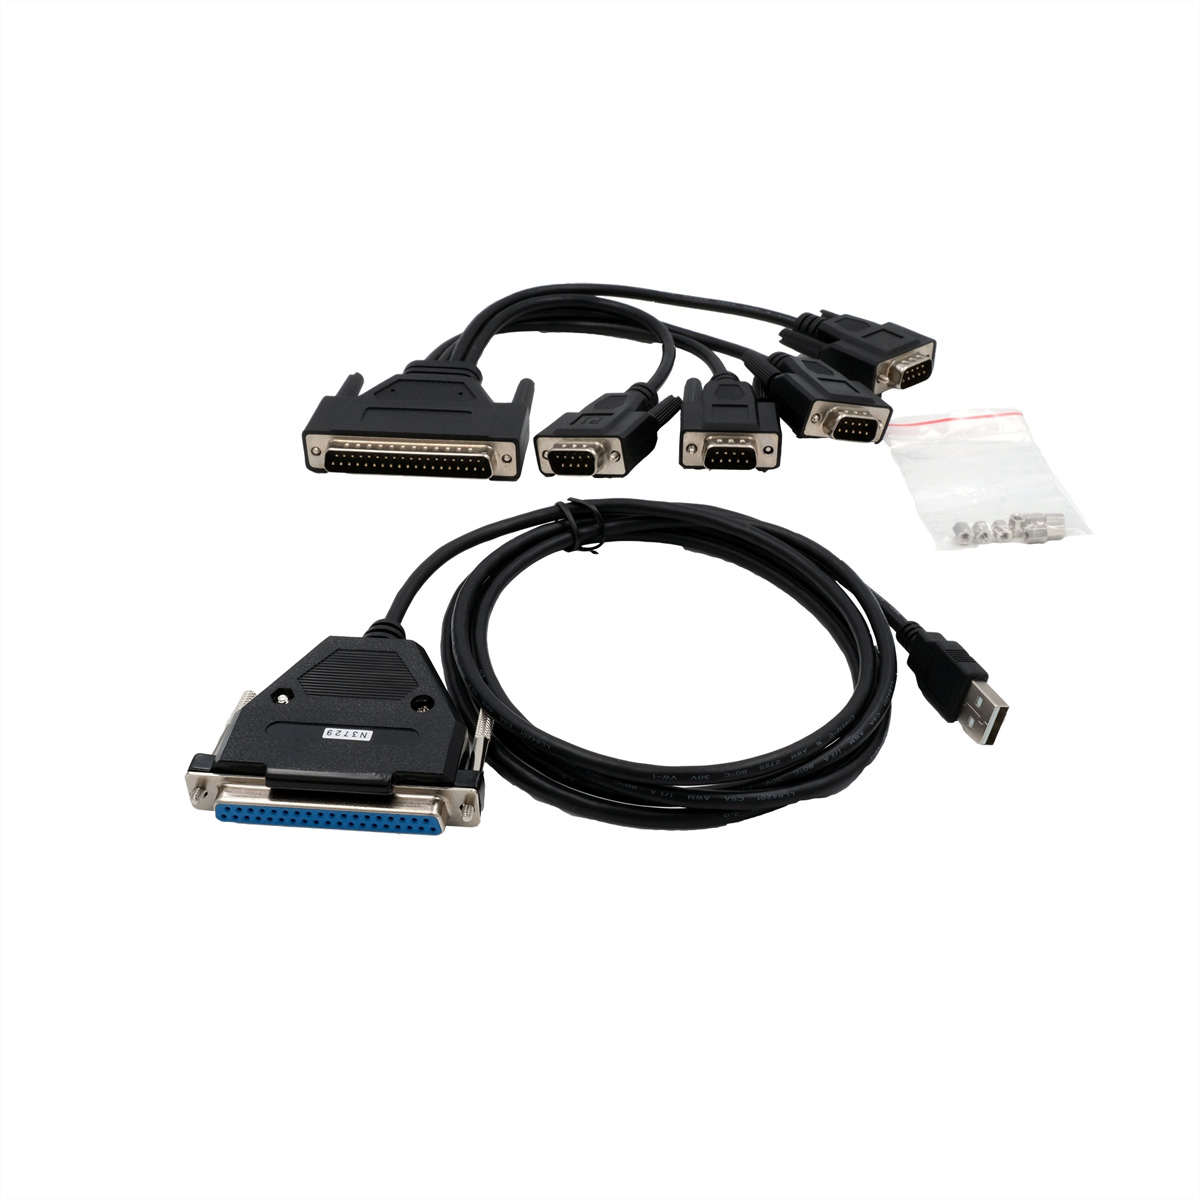 EXSYS EX-1324-37P USB 2.0 zu 4 x Serielle Schnittstelle RS-232 Ports mit 37 Pin